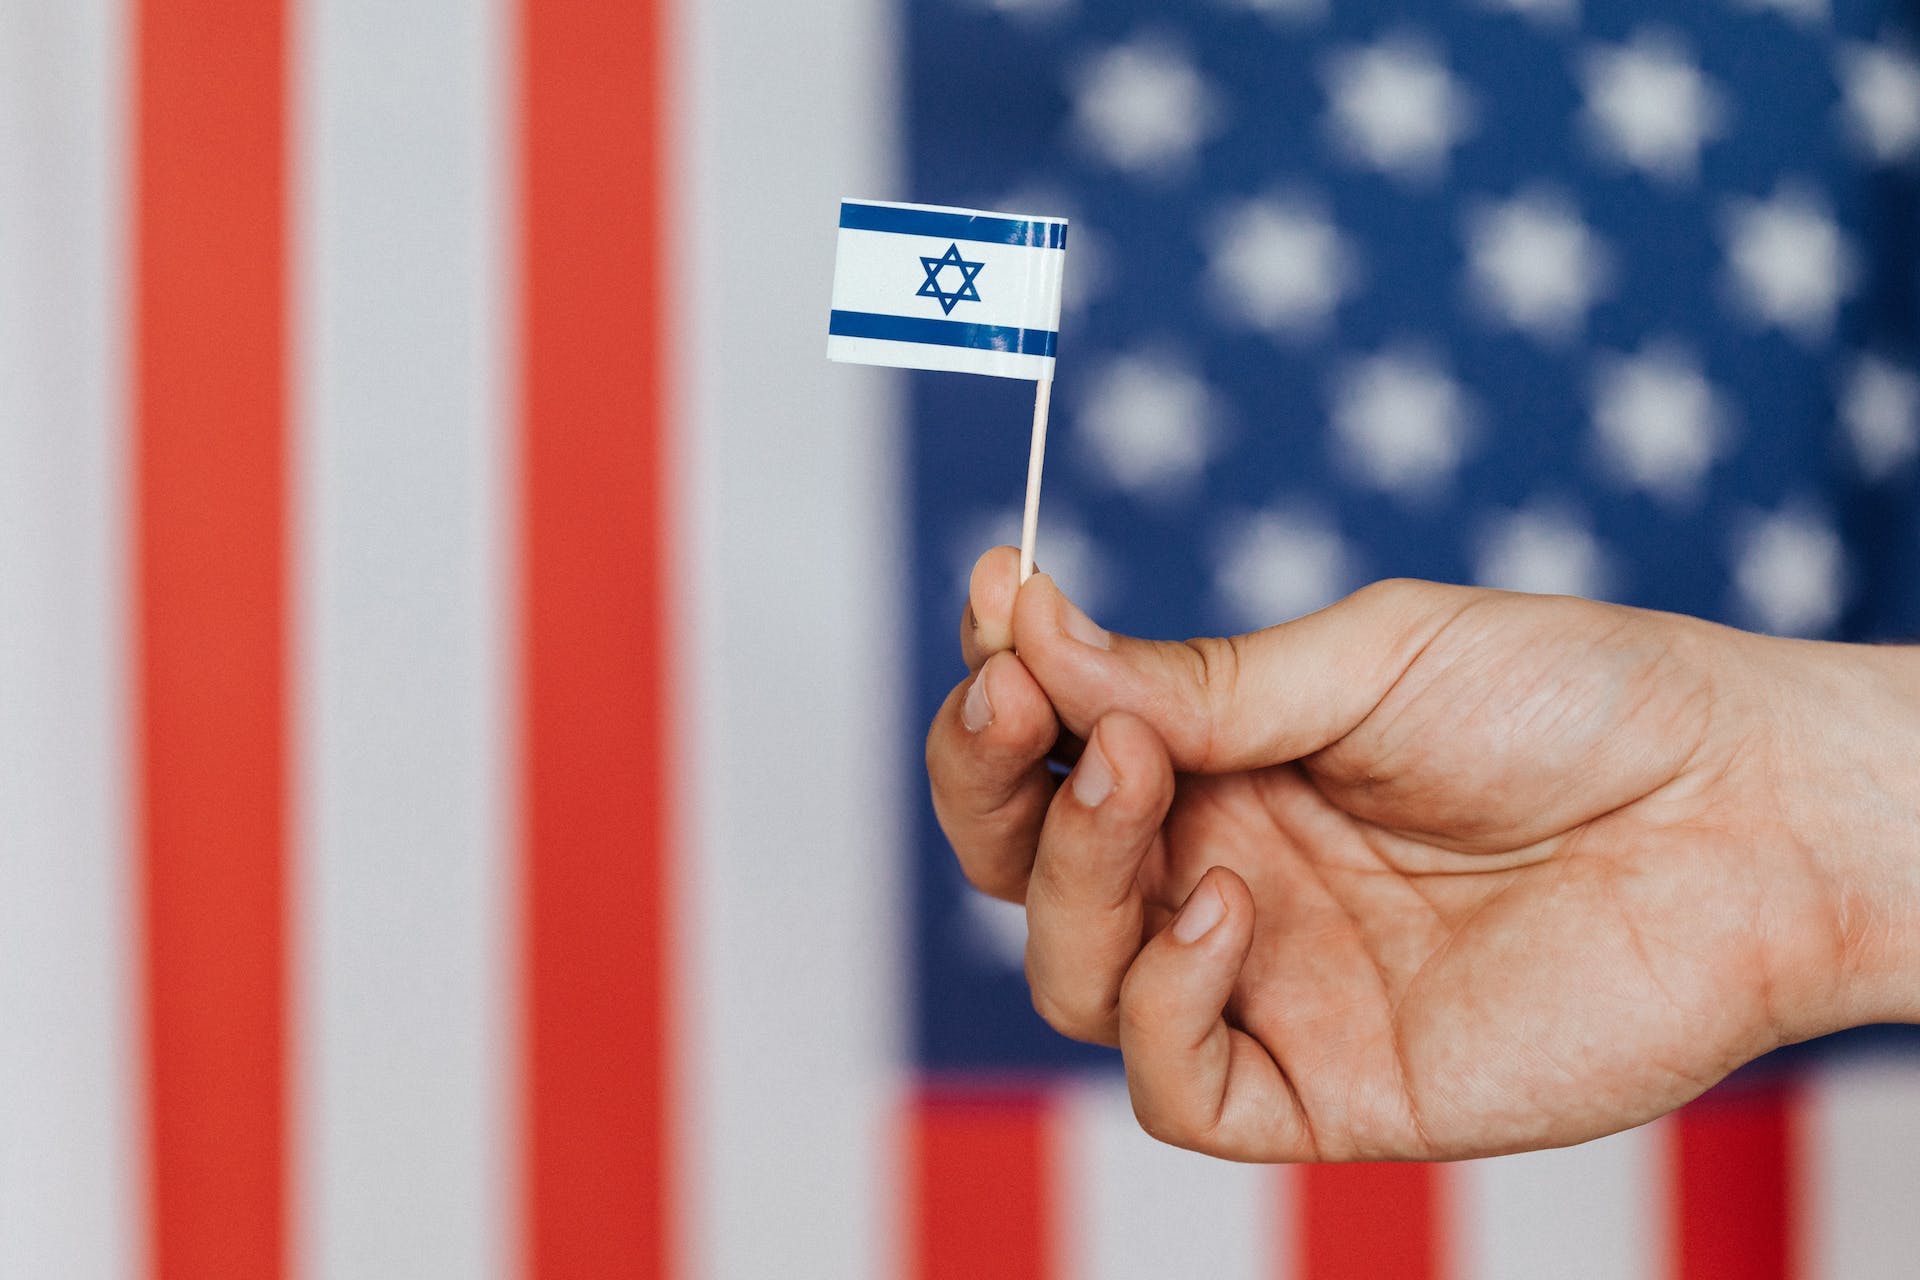 Una fundación israelí-estadounidense está invirtiendo 9,6 millones de dólares en 10 nuevos proyectos realizados conjuntamente por empresas israelíes y estadounidenses dentro de la industria de la tecnología. Foto: Karolina Grabowska/Pexels.